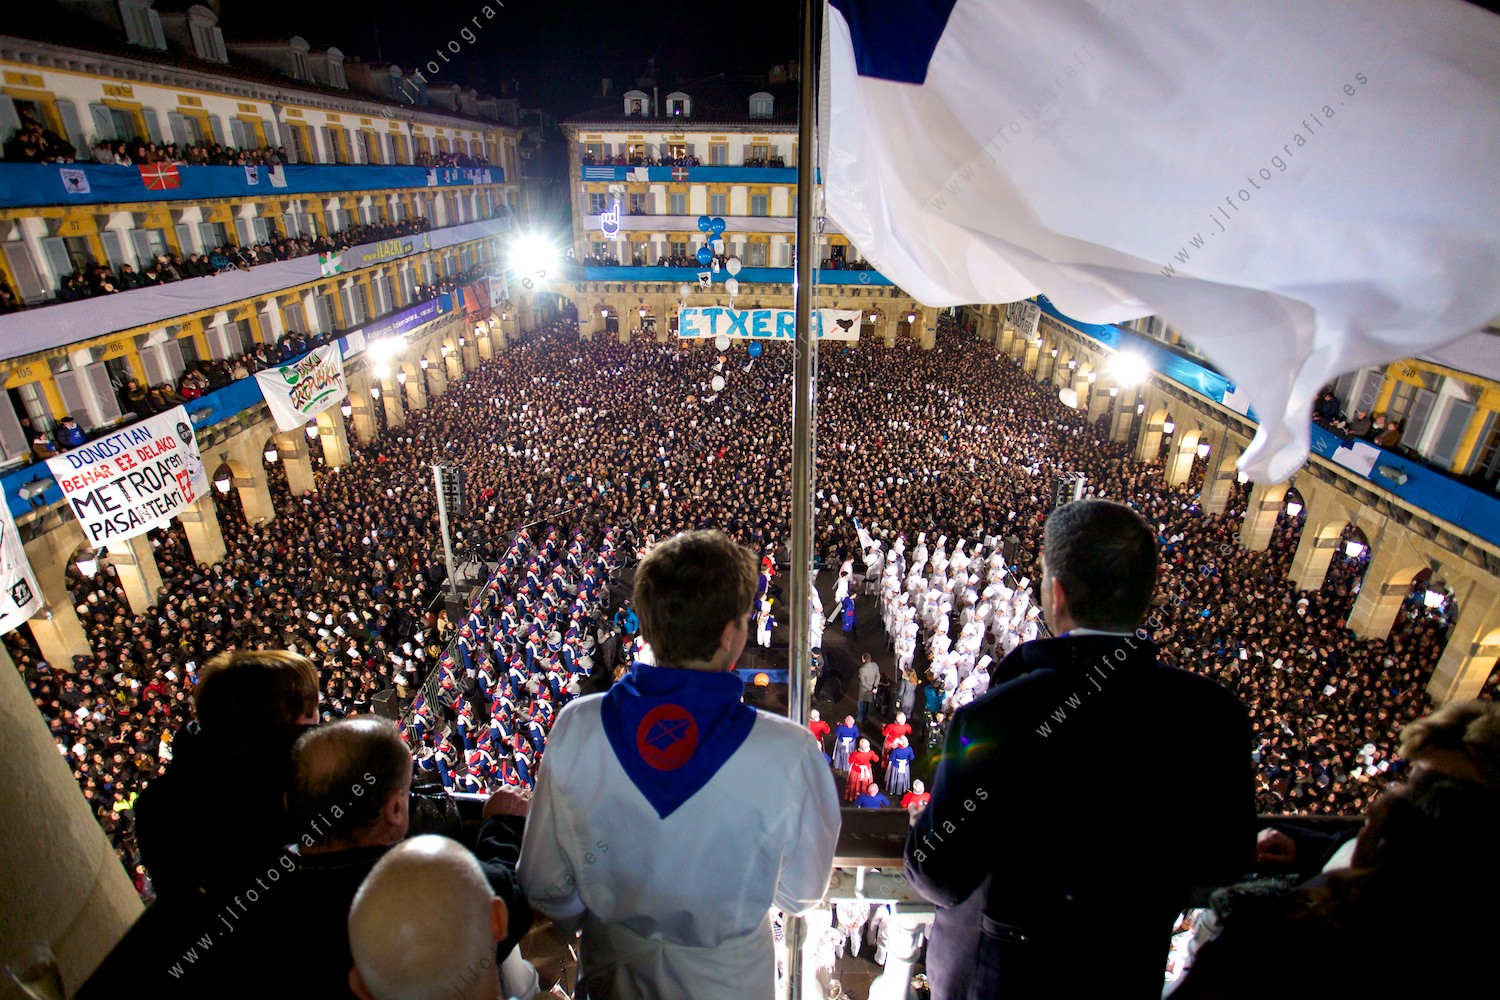 Tamborrada de San Sebastián desde el balcón del ayuntamiento durante la celebración.